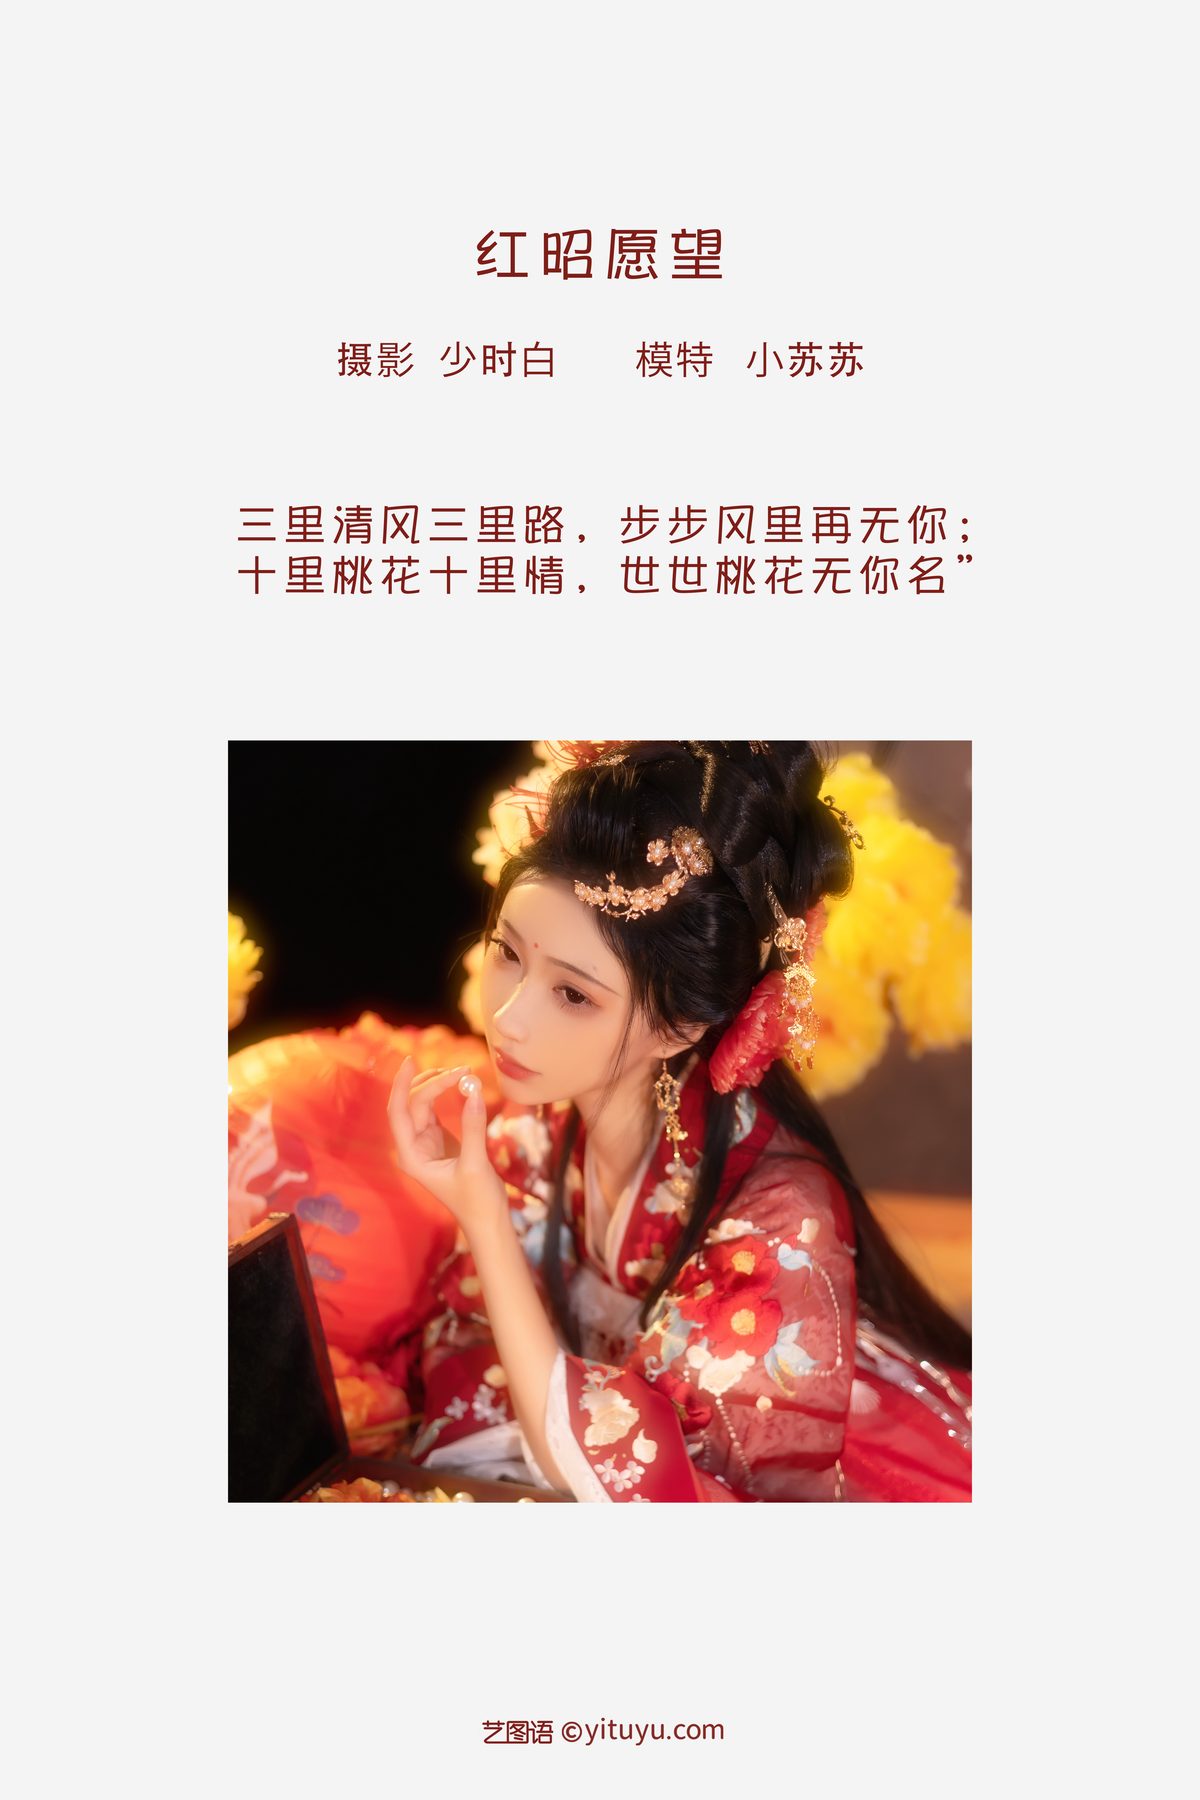 YiTuYu艺图语 Vol 3504 Qi Luo Sheng De Xiao Su Su 0001 4258248414.jpg